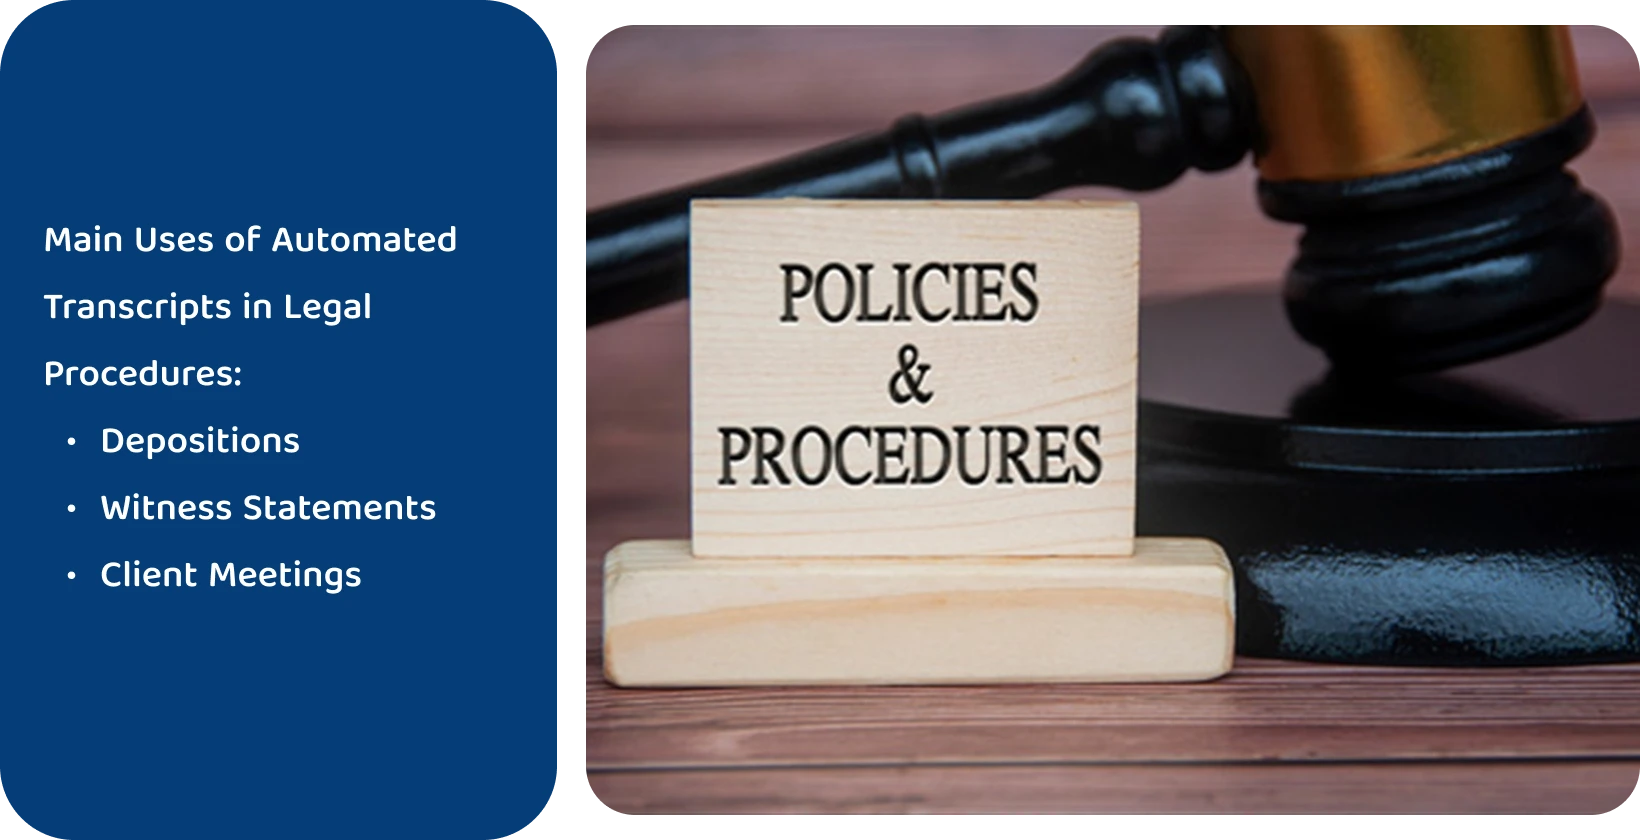 'नीतियों और प्रक्रियाओं' के संकेत के बगल में गैवेल, स्वचालित प्रतिलेखन उपकरणों द्वारा मिले कानूनी मानकों का प्रतिनिधित्व करता है।